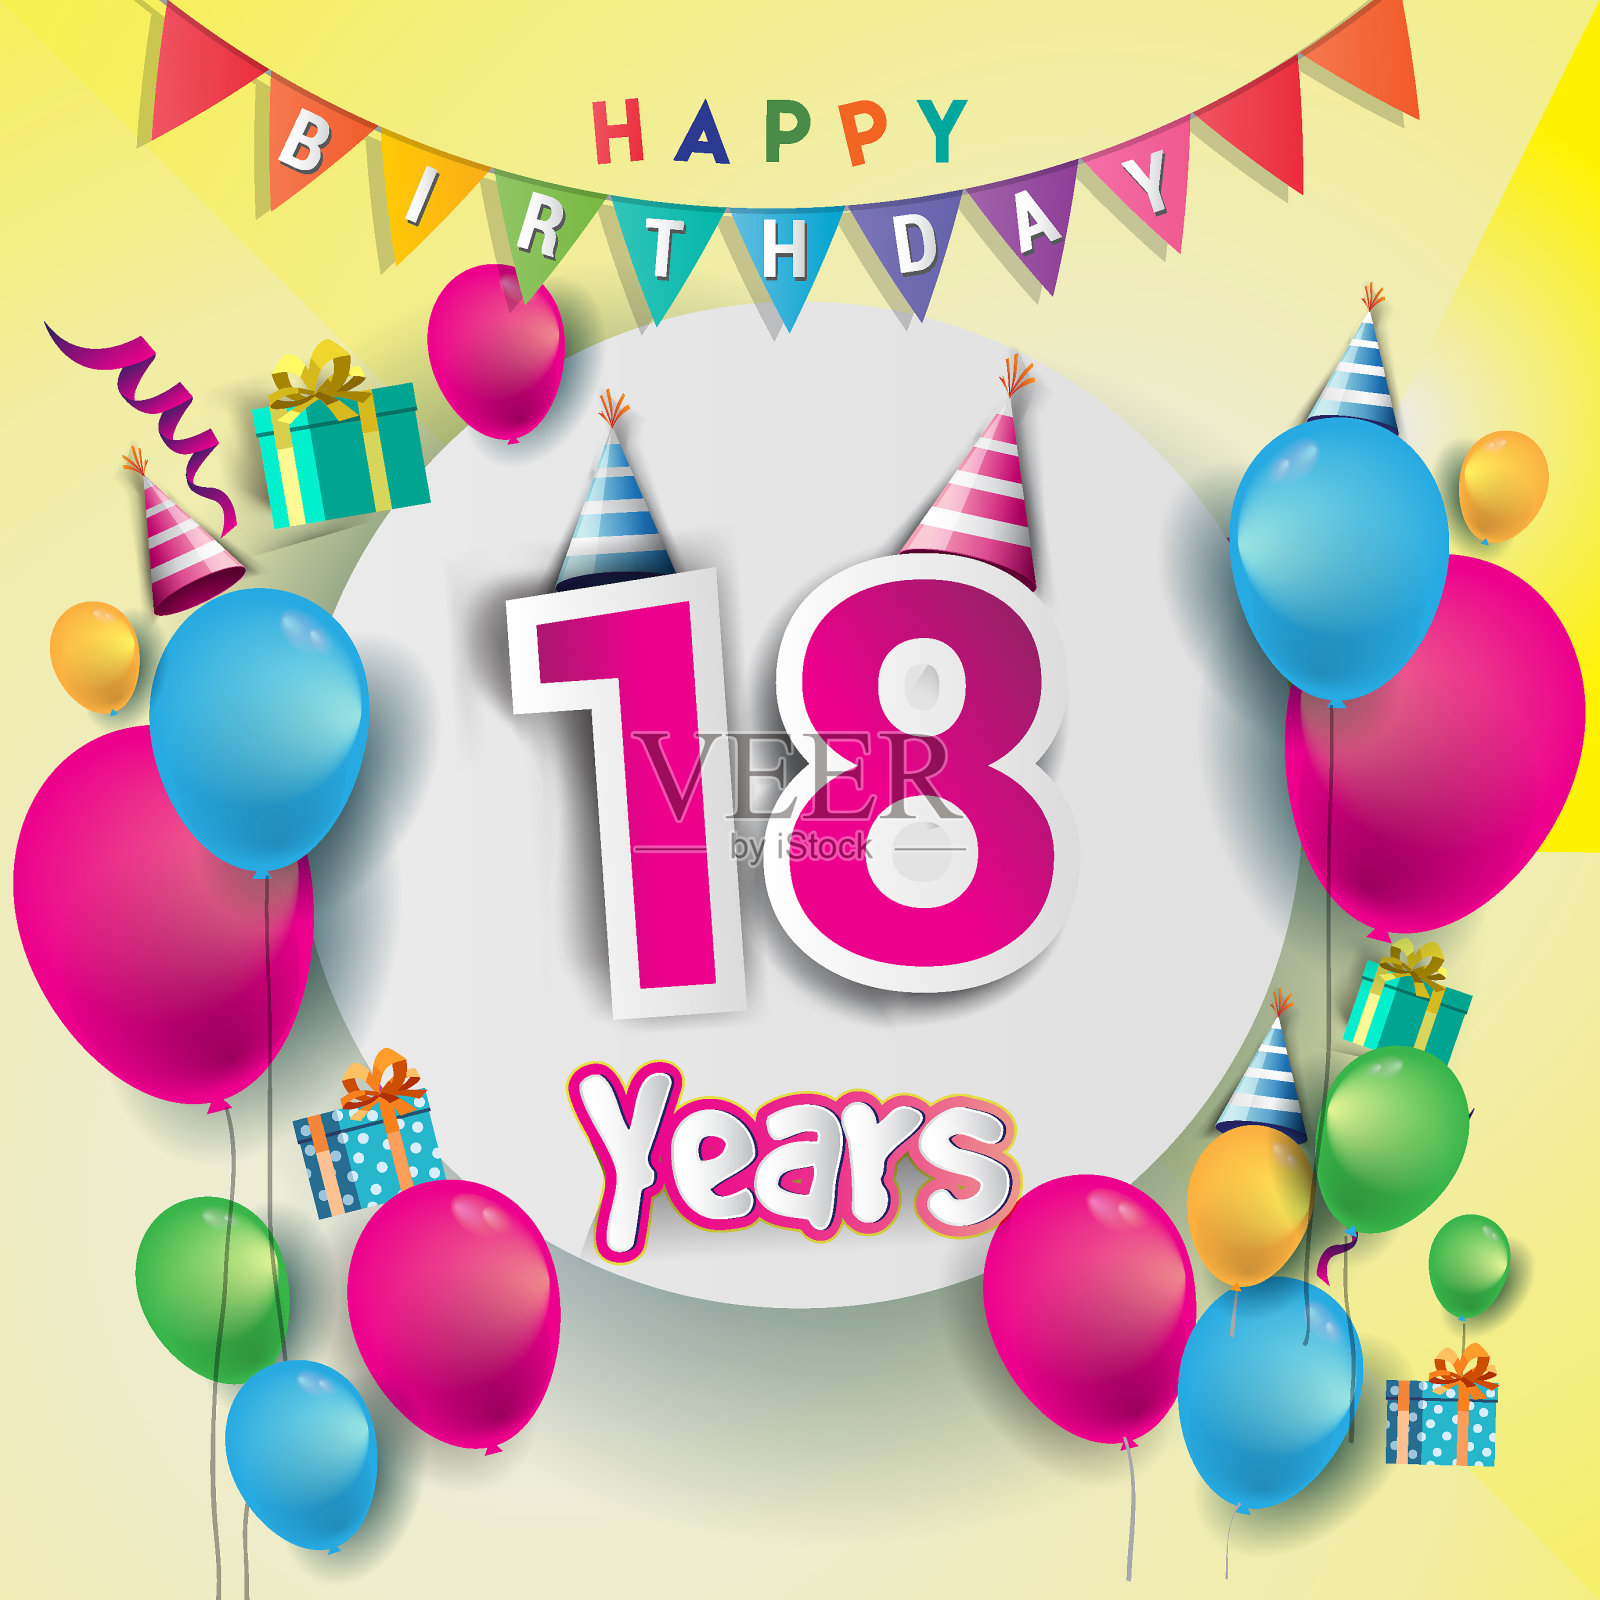 18周年庆典、生日卡或贺卡设计与礼品盒和气球，彩色矢量元素为周年庆典。设计模板素材